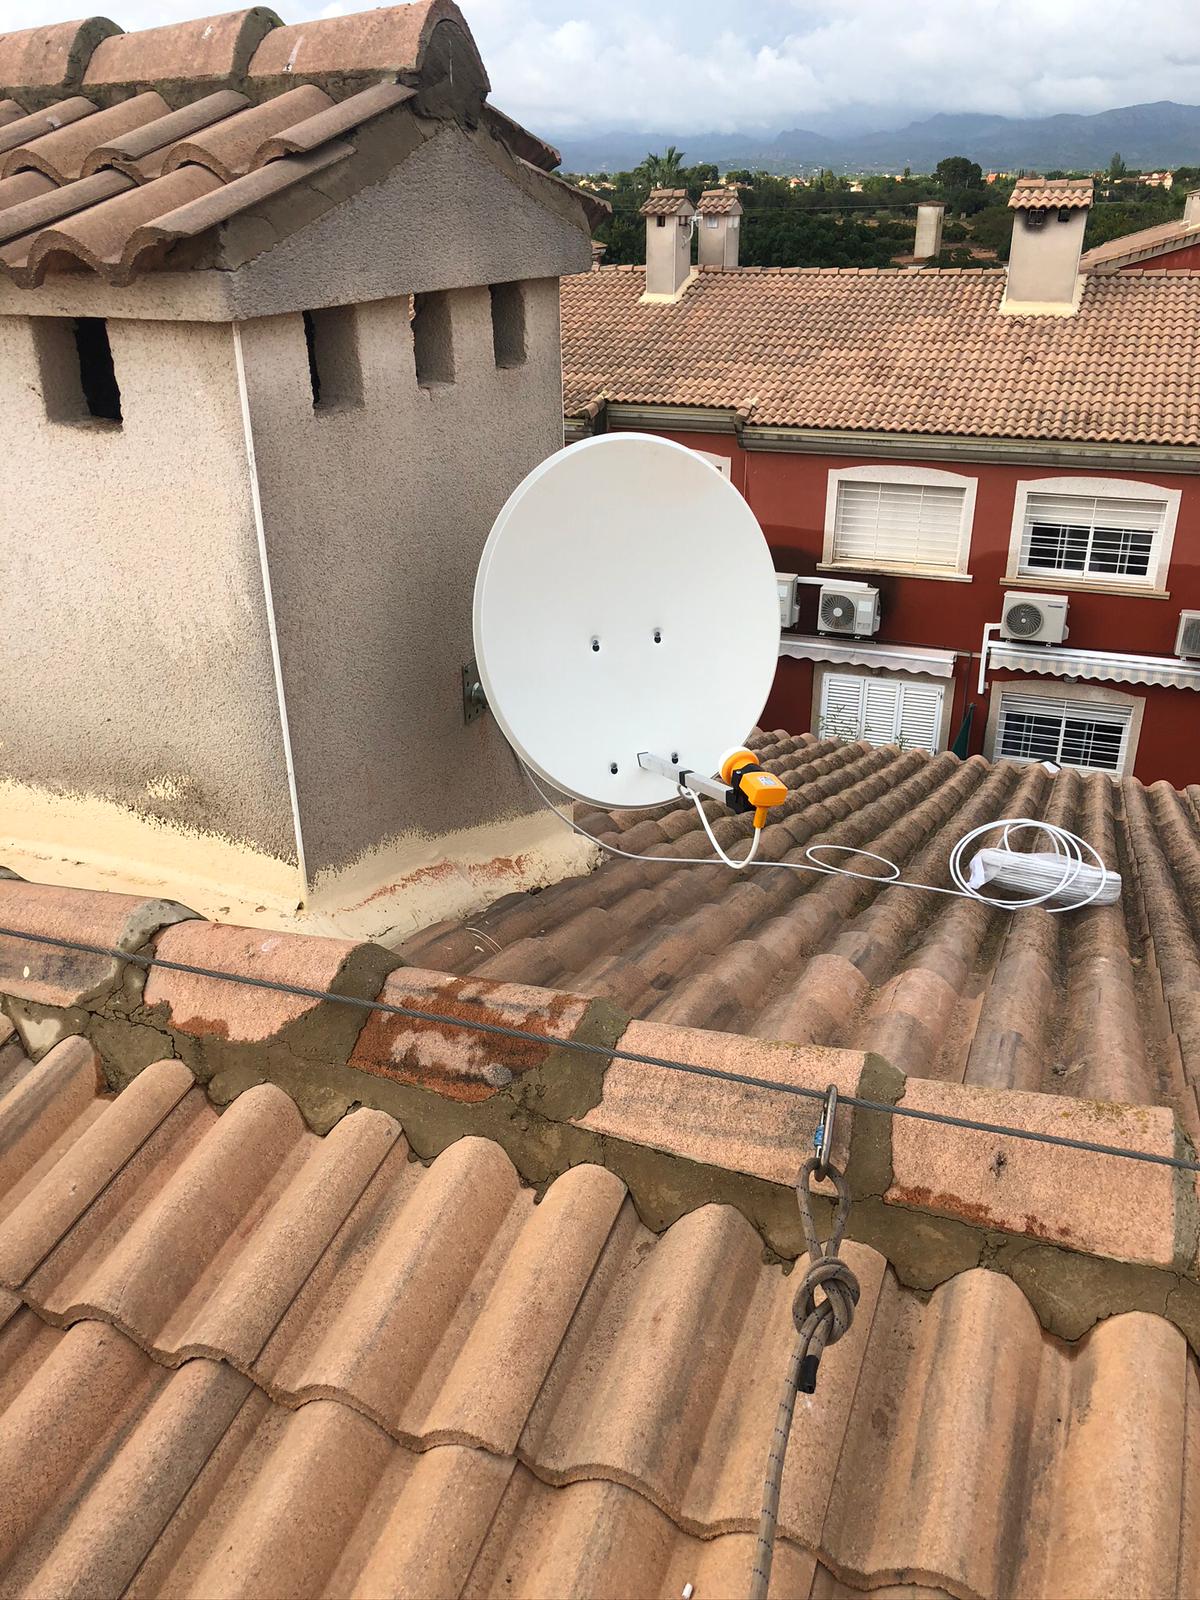 Montaje de antenas Valencia | 600615600 | antenistaautonomovalencia.es